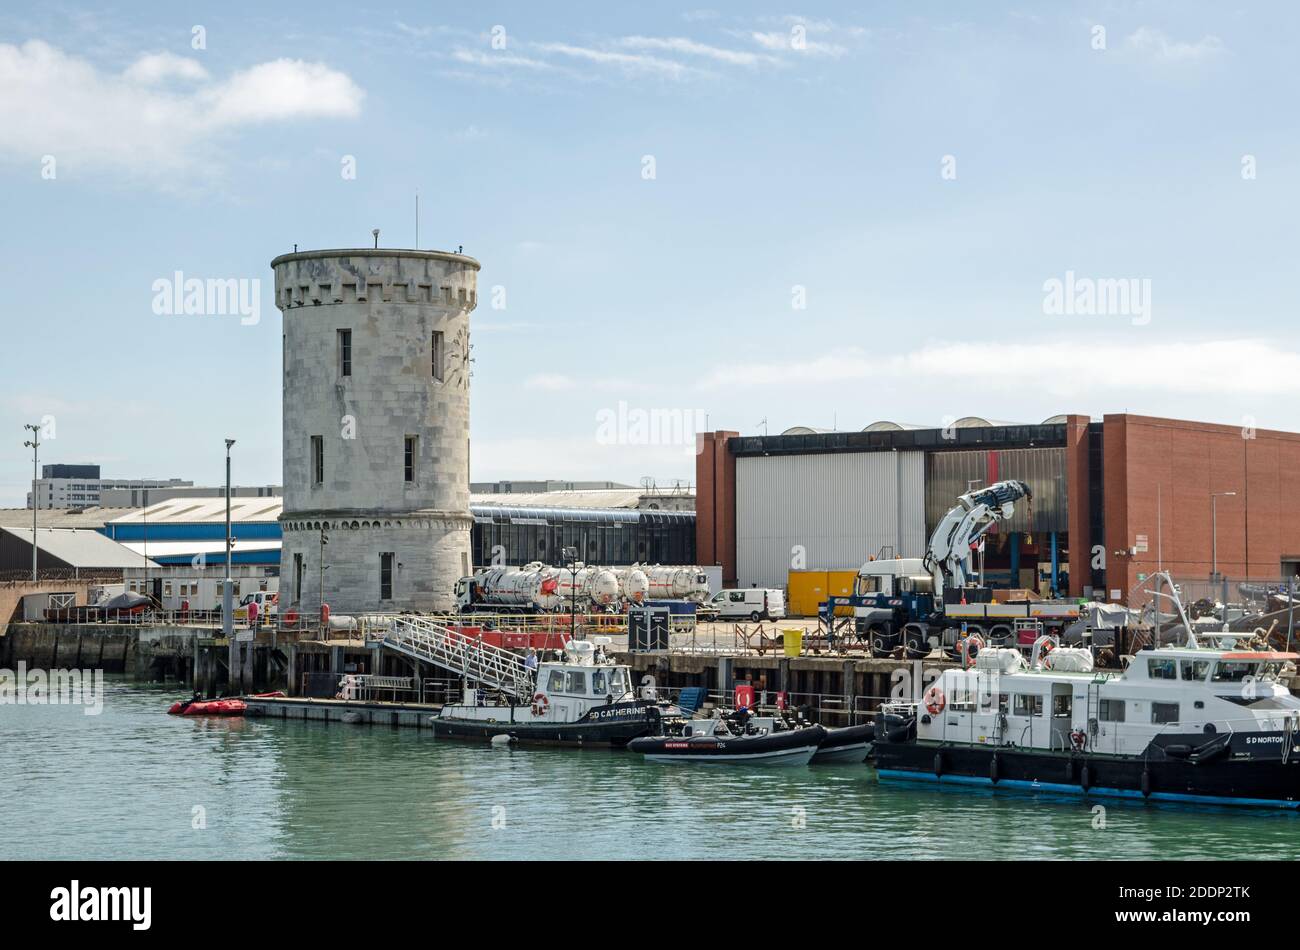 Portsmouth, Großbritannien - 8. September 2020: Schiffe vertäuten an einem sonnigen Tag in der Nähe des historischen Round Tower an der Royal Navy Base in Portsmouth Harbour, Hampshire. Stockfoto